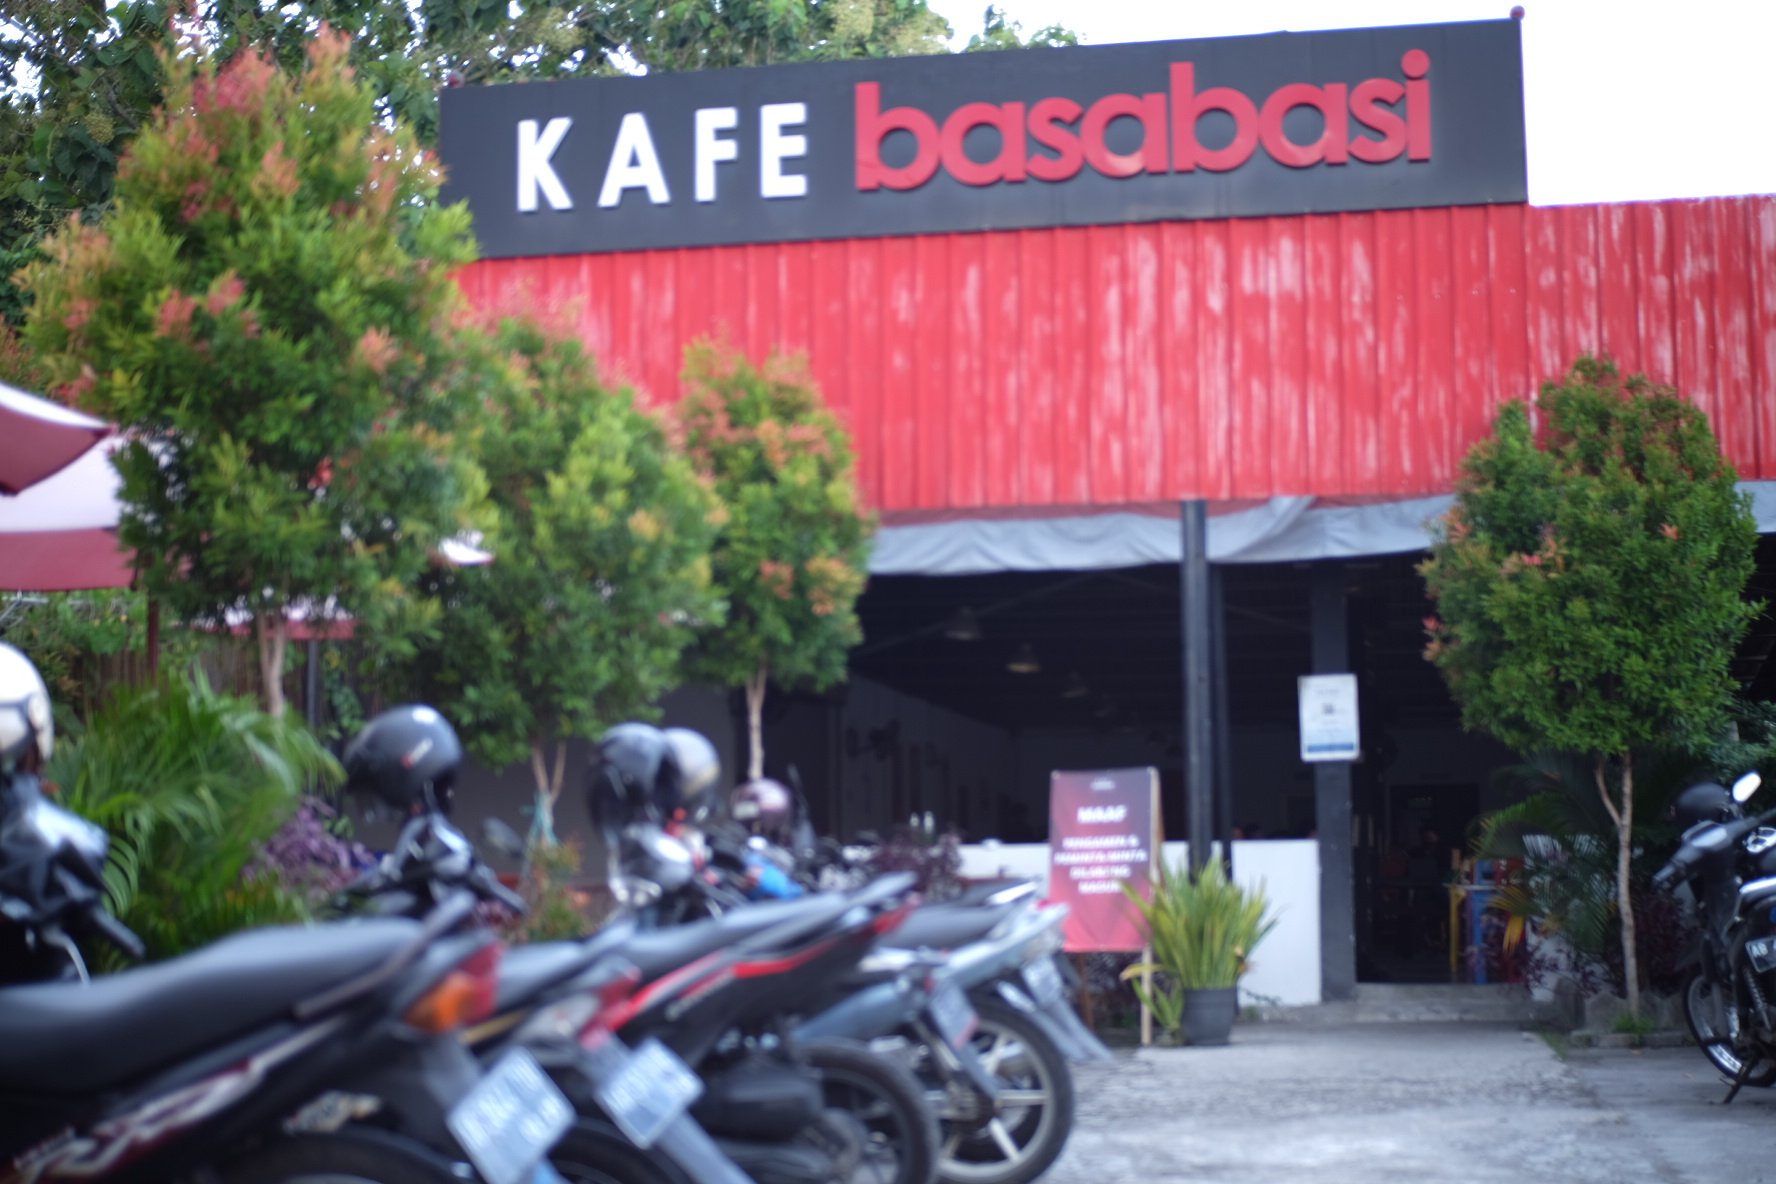 Maulid yang Menghidupkan: Merayakan Kelahiran Nabi Muhammad SAW di Salah Satu Kafe Terkenal di Yogyakarta